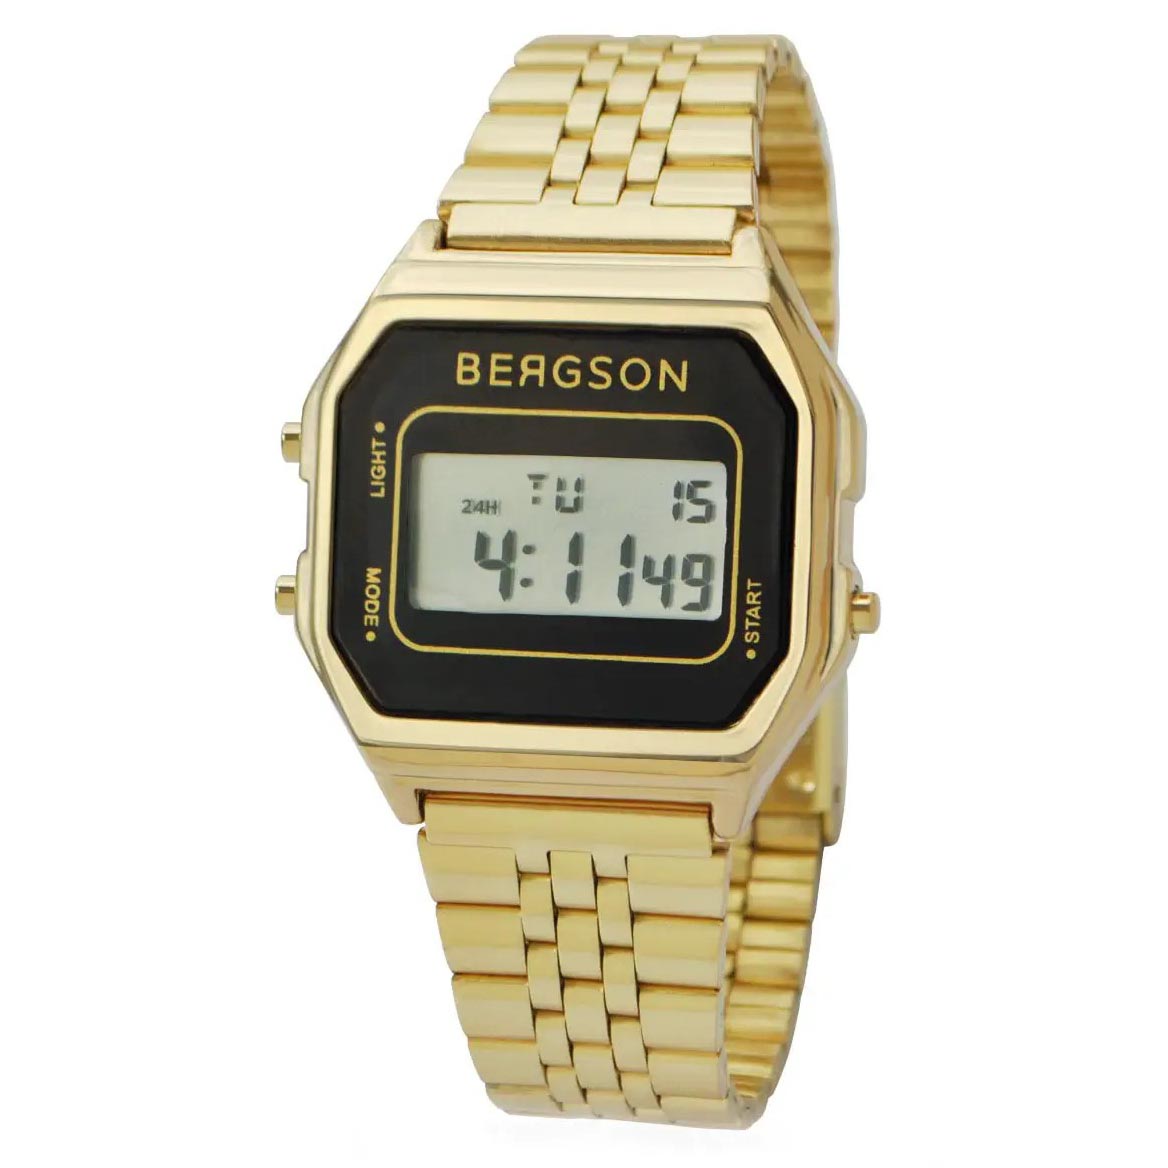 Afbeelding van Bergson Retro watch